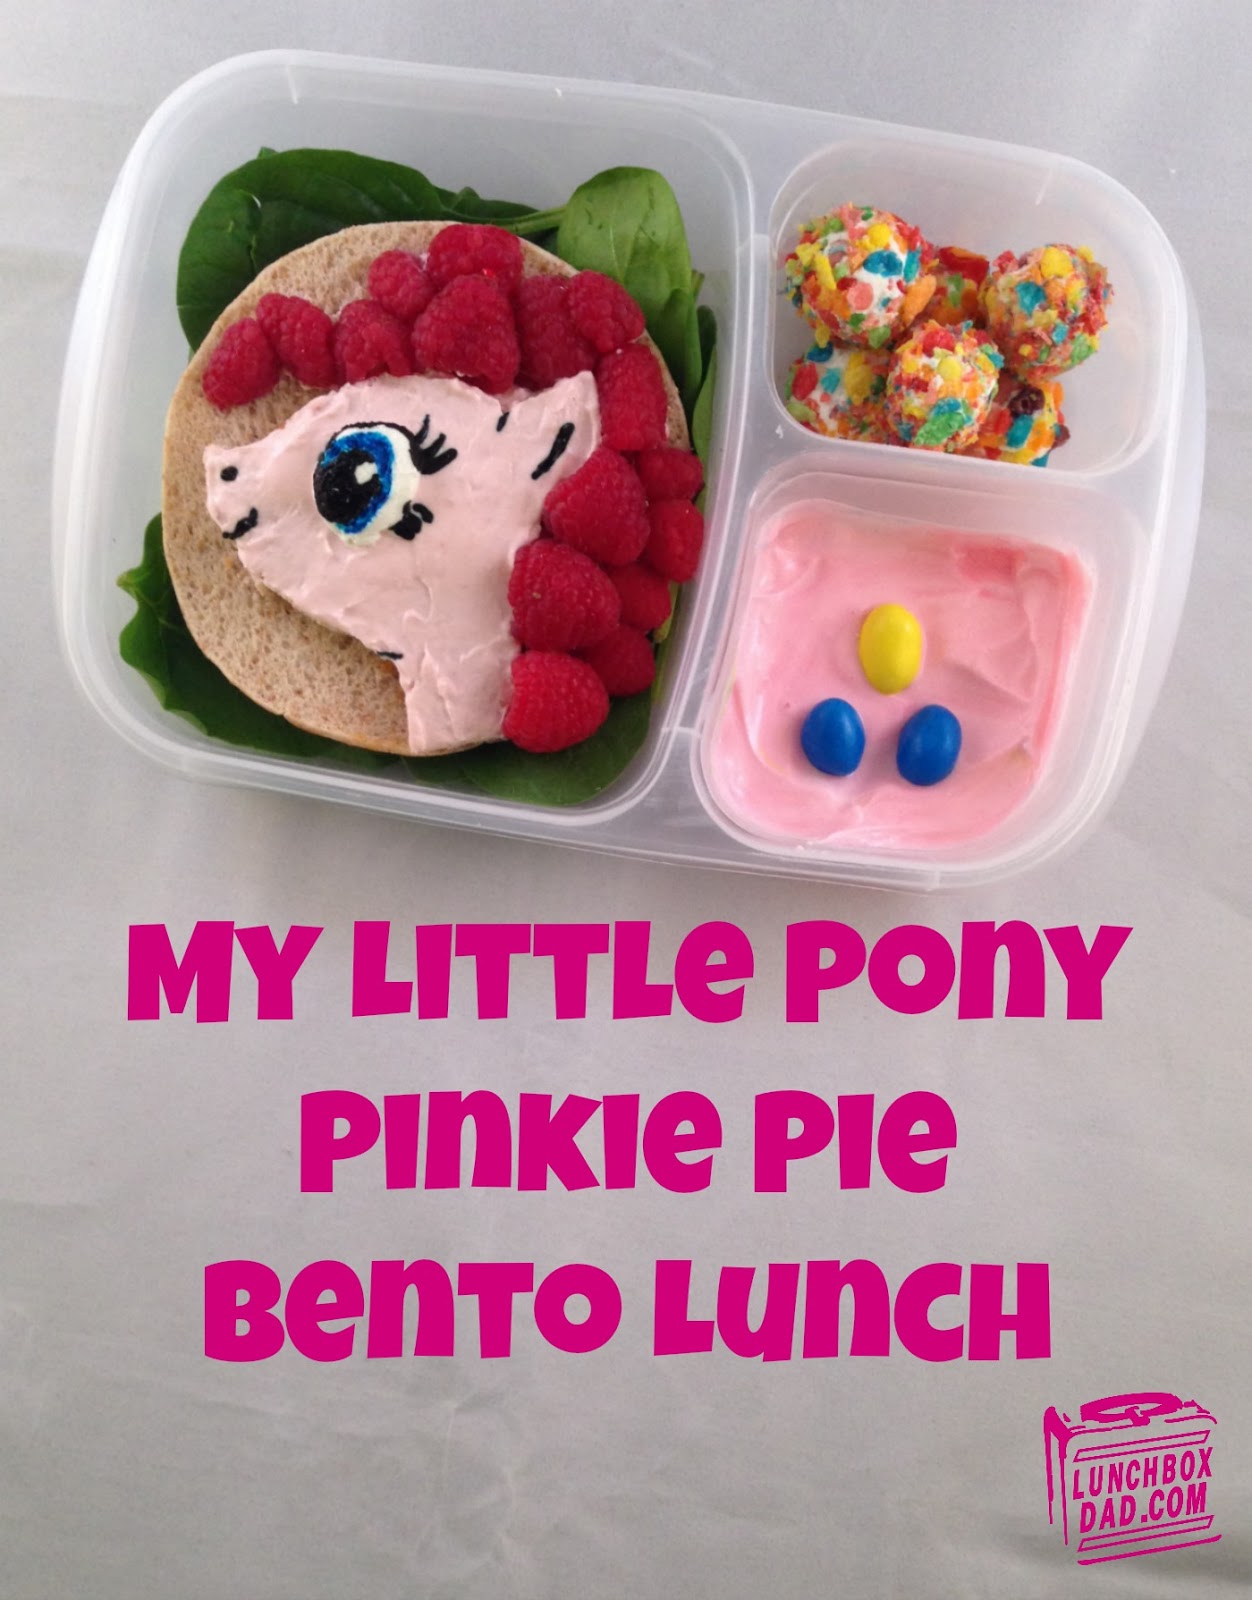 http://2.bp.blogspot.com/-uWuGBZfs-pA/UwrrQm0pe9I/AAAAAAAADlQ/RGsXFCHOjHM/s1600/My+Little+Pony+Pinkie+Pie.jpg